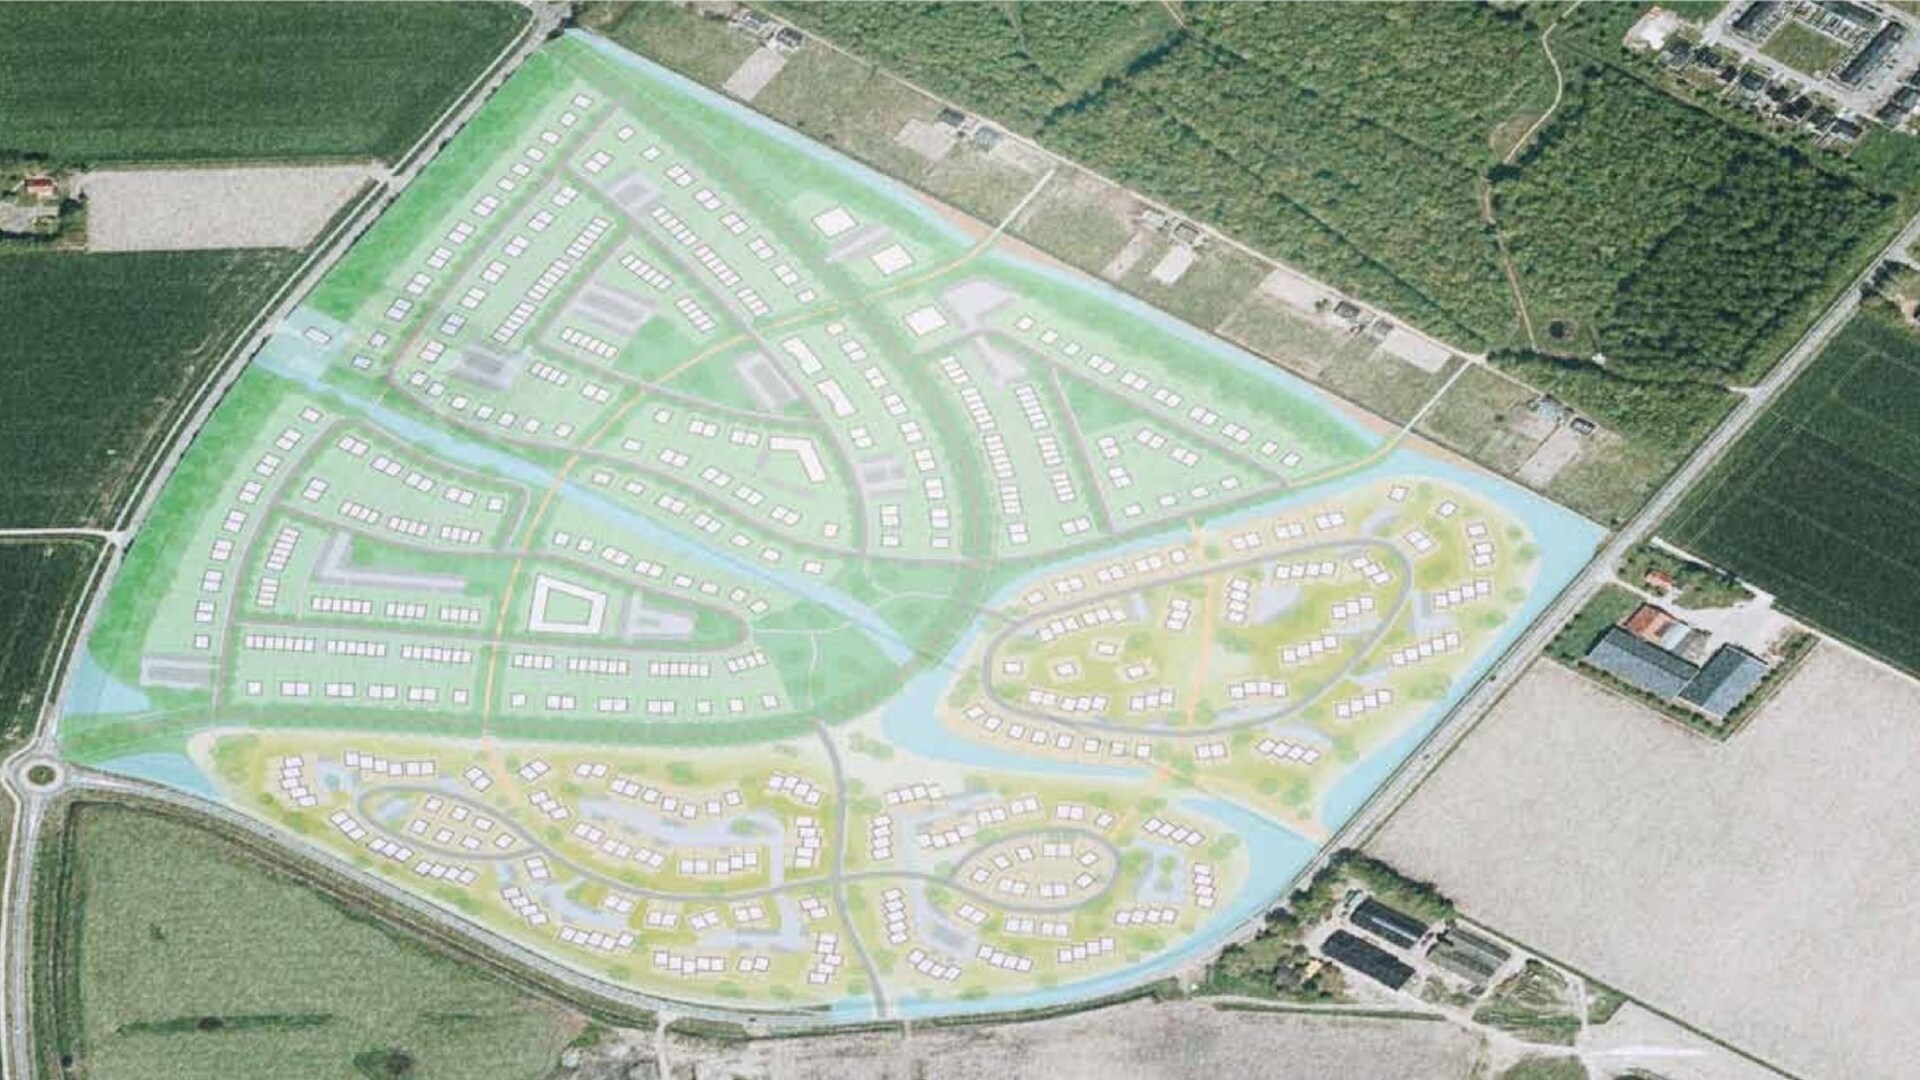 Kaartbeeld van de toekomstige wijk uit het beeld kwaliteitsplan Gemeente Dronten